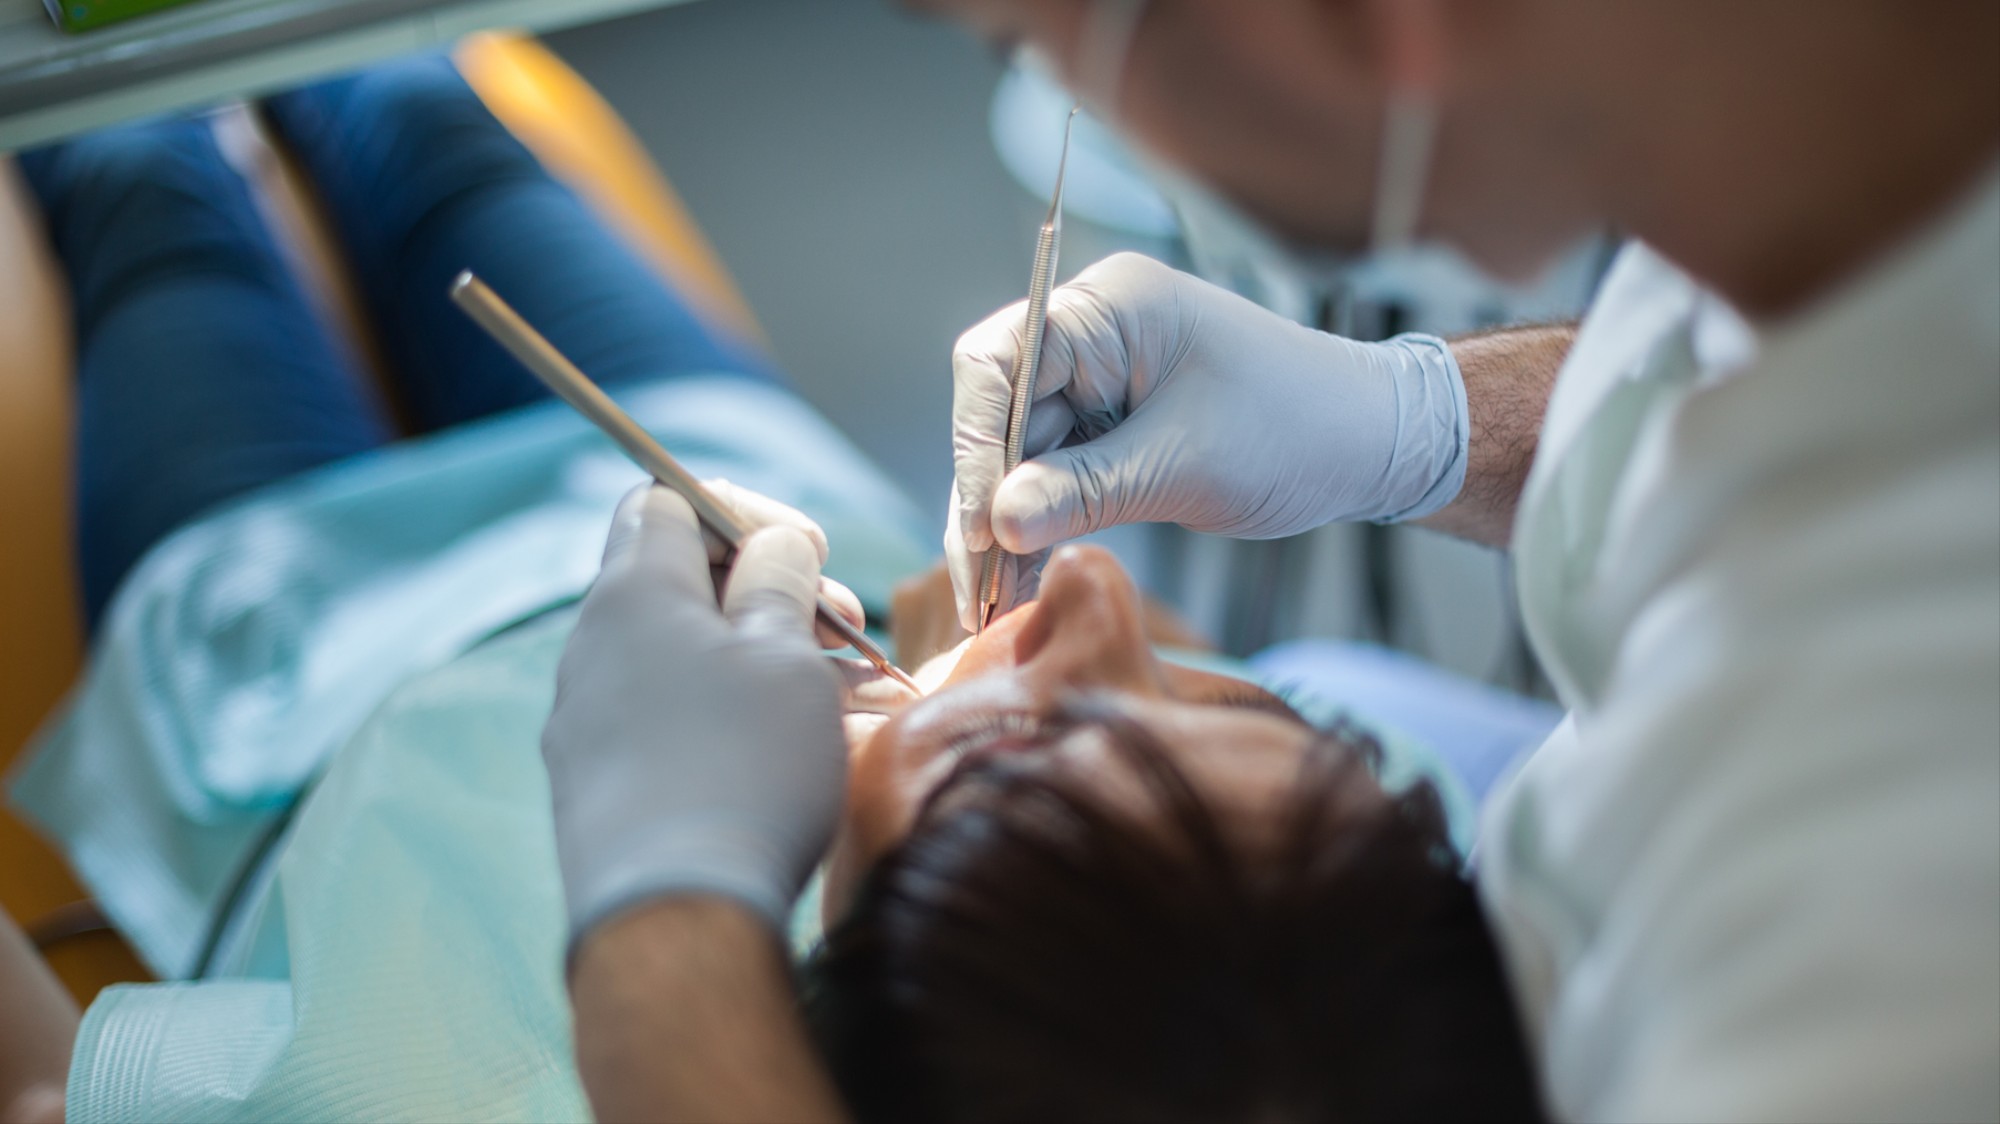 Ηλιούπολη: Στον εισαγγελέα ο «μαϊμού» οδοντίατρος - Έρευνα και για άλλες καταγγελίες